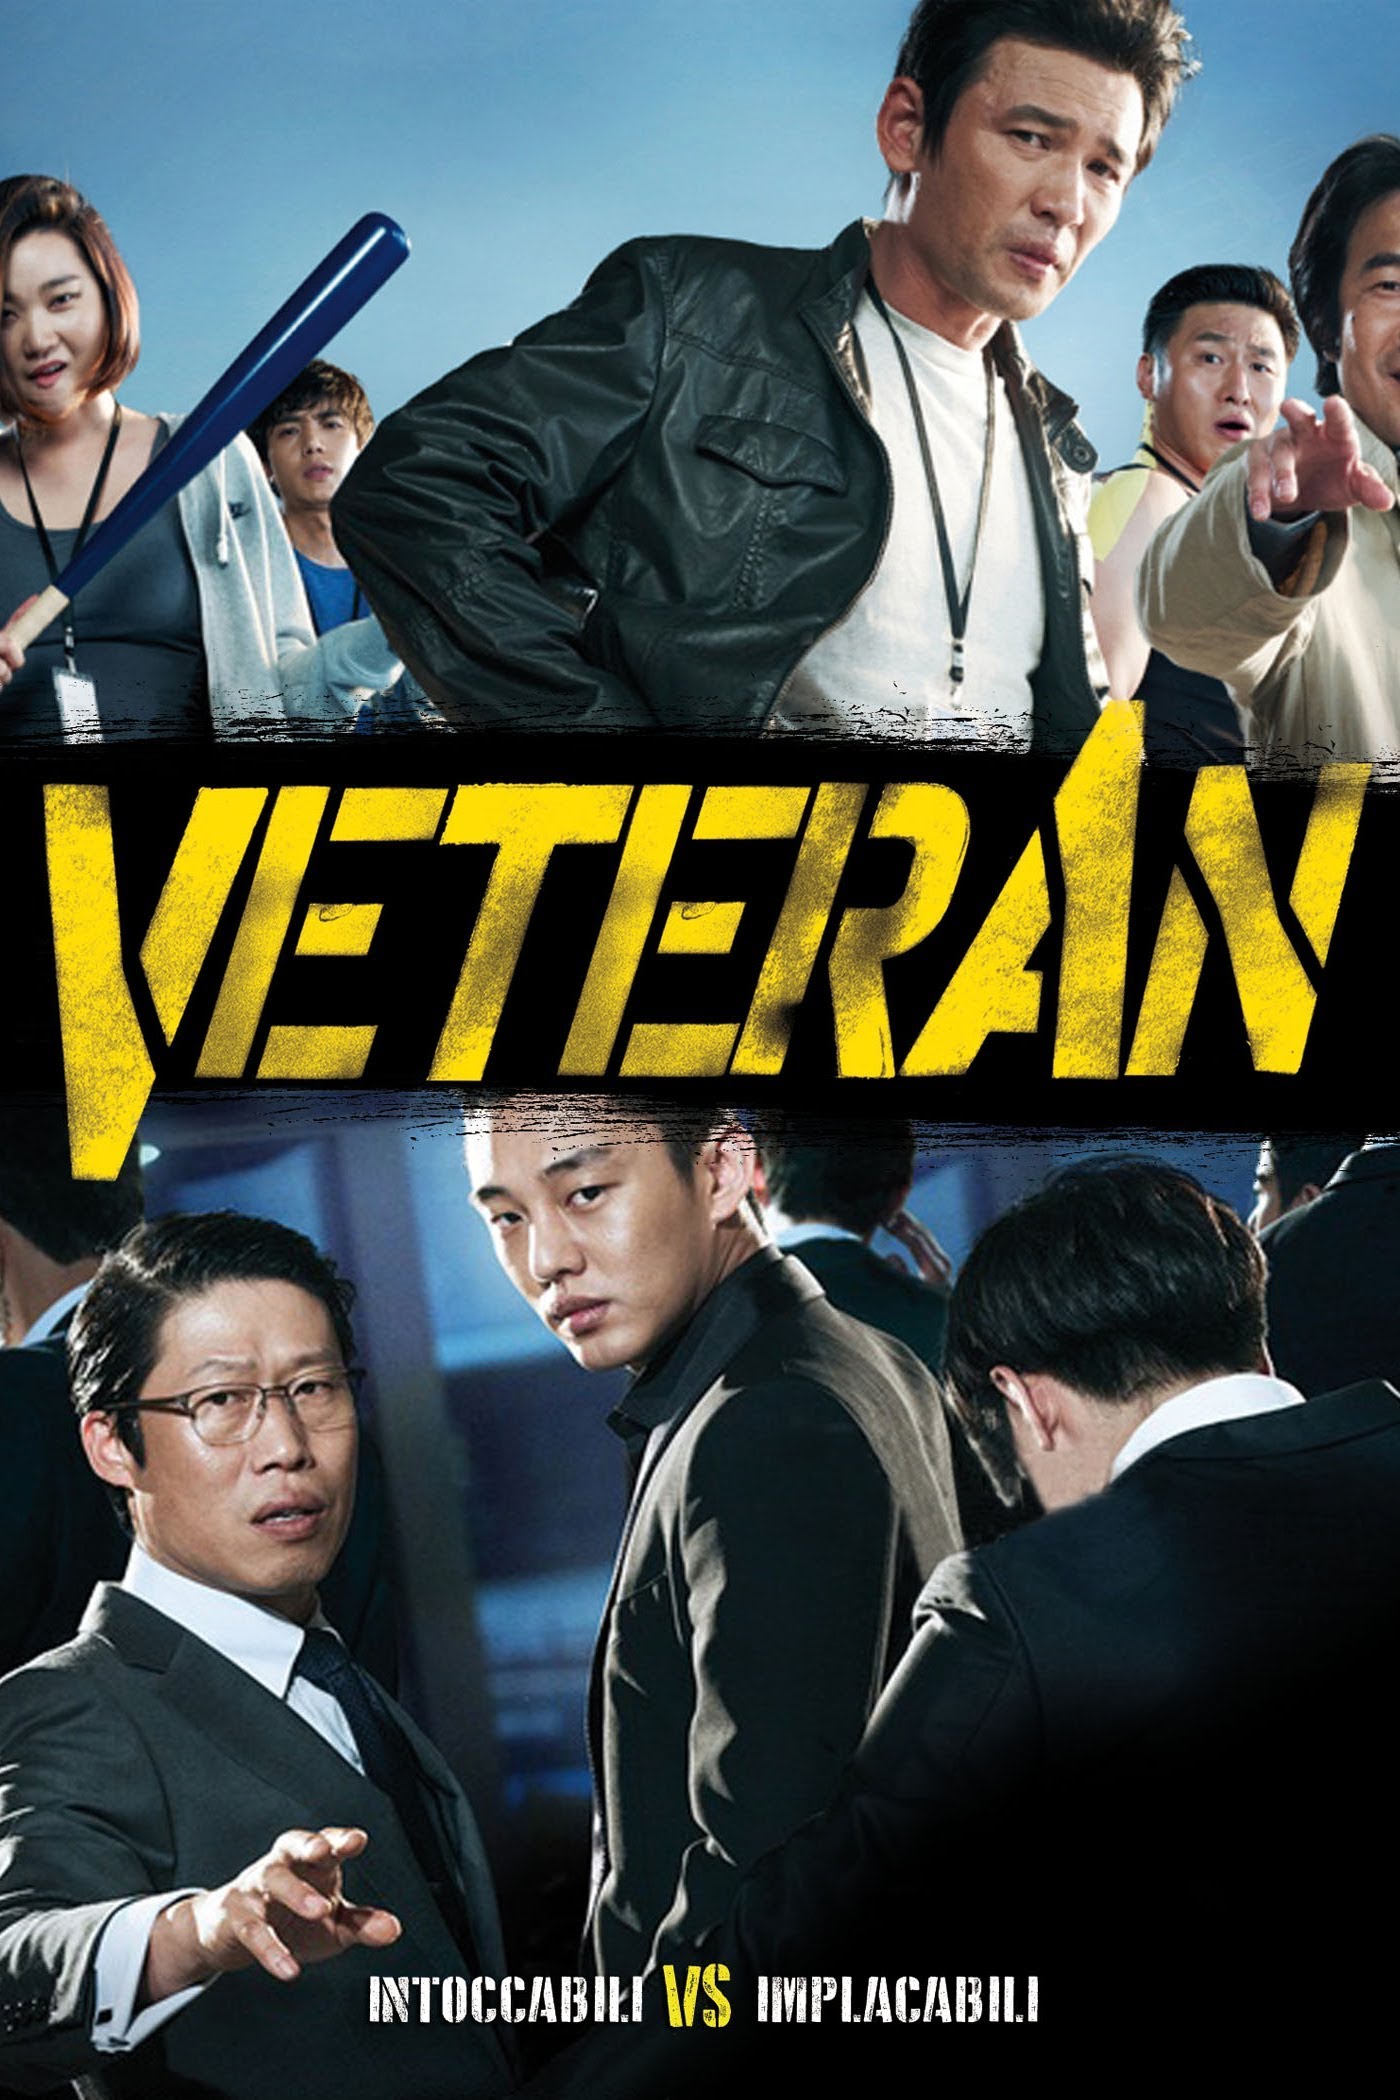 Veteran [HD] (2015)